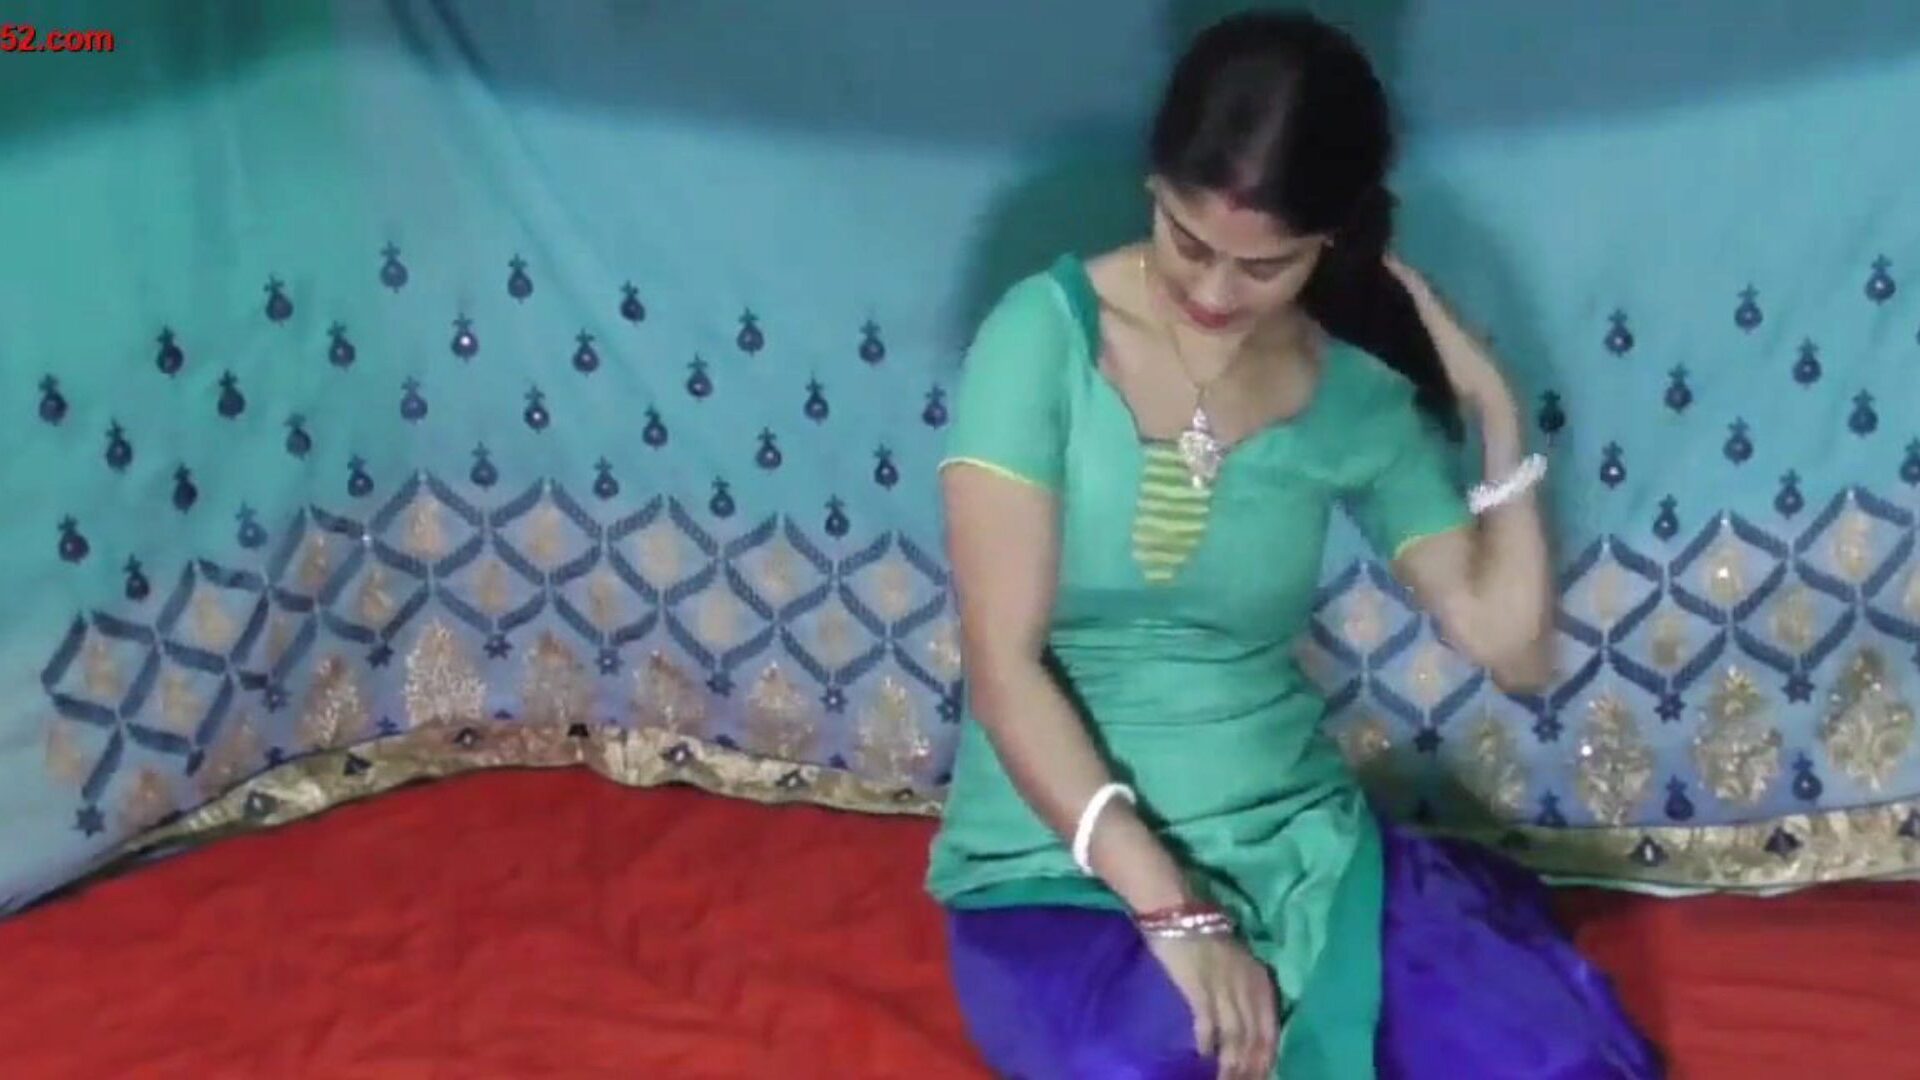 aranyos n szexi falu indiai nők szar a kamera előtt néz aranyos n szexi falusi indiai nők szar a kamera epizód előtt a xhamsteren - a mindenkinek ingyenes ázsiai ingyenes n hd pornó csövek